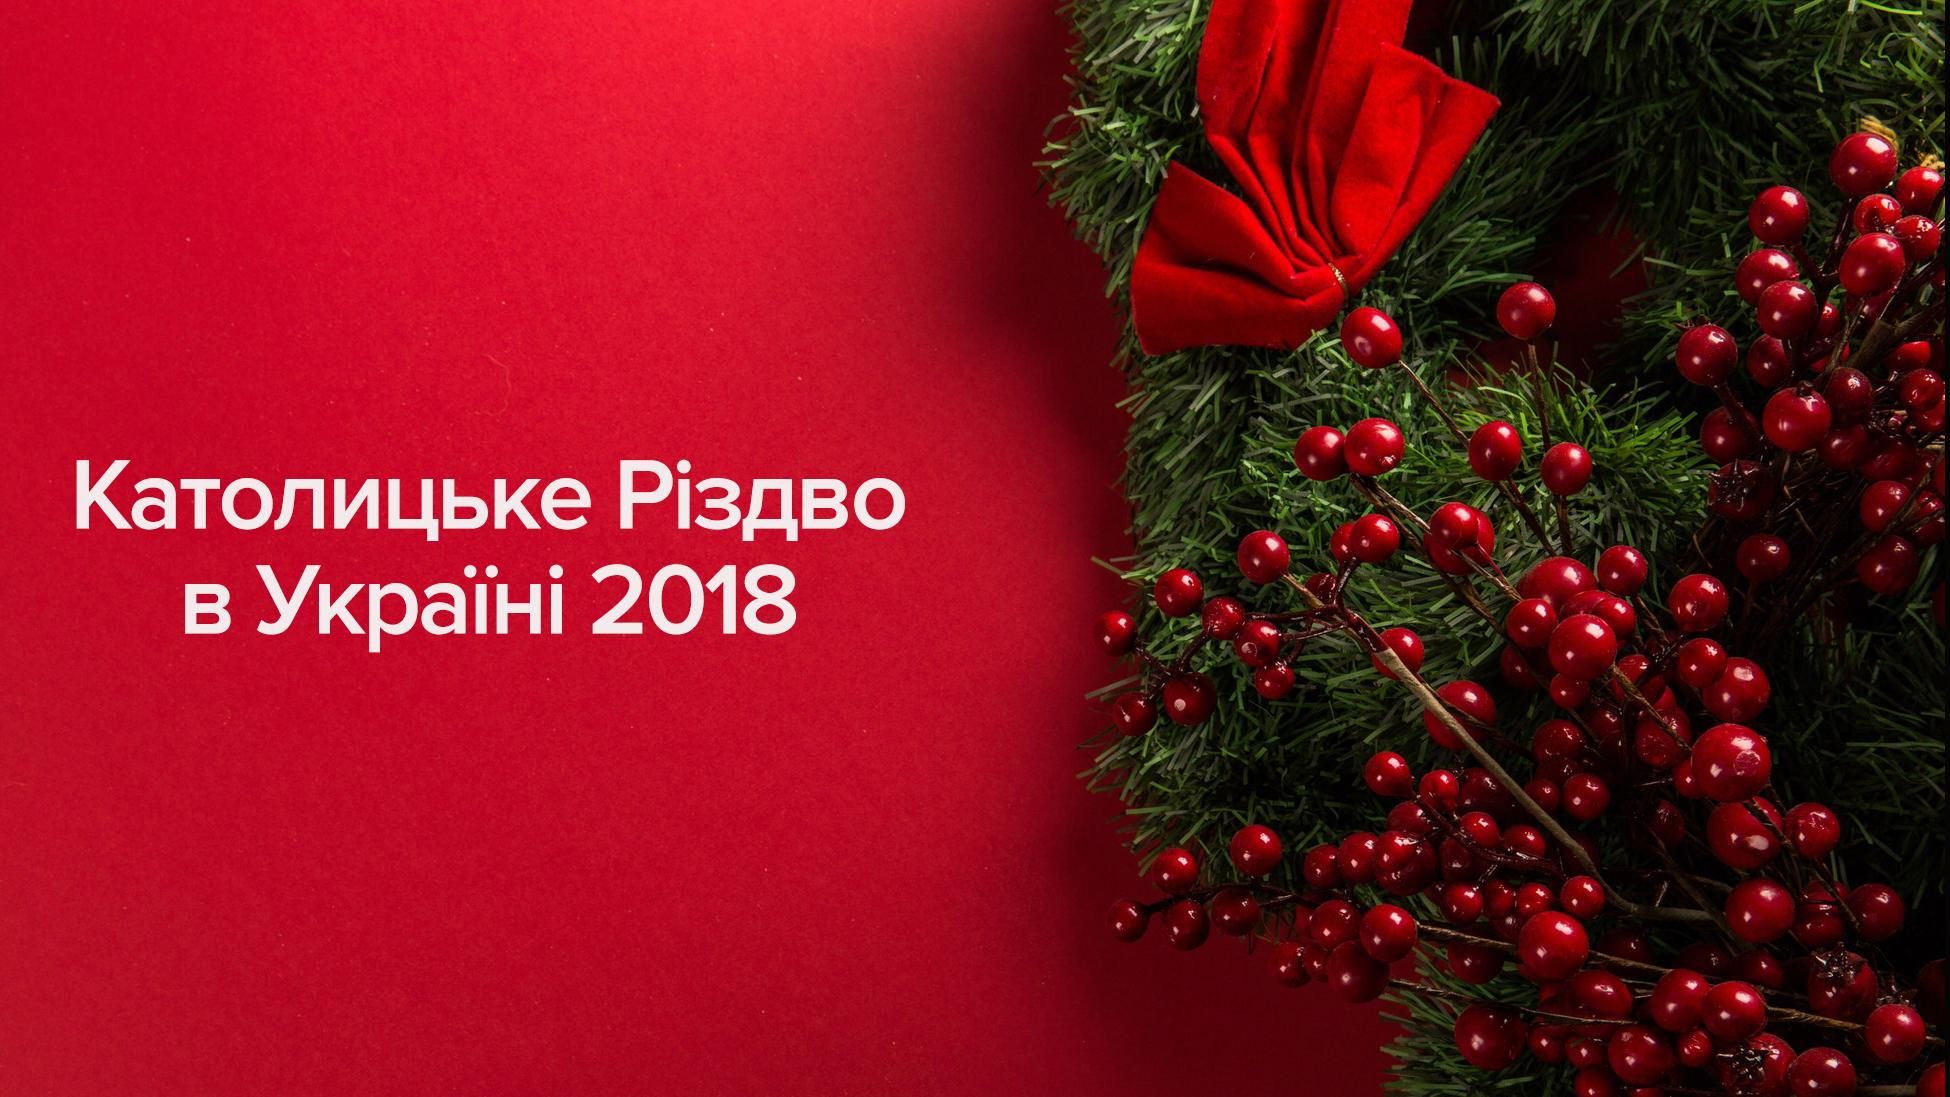 Католическое Рождество 2018 выходной в Украине - дата праздника в Украине